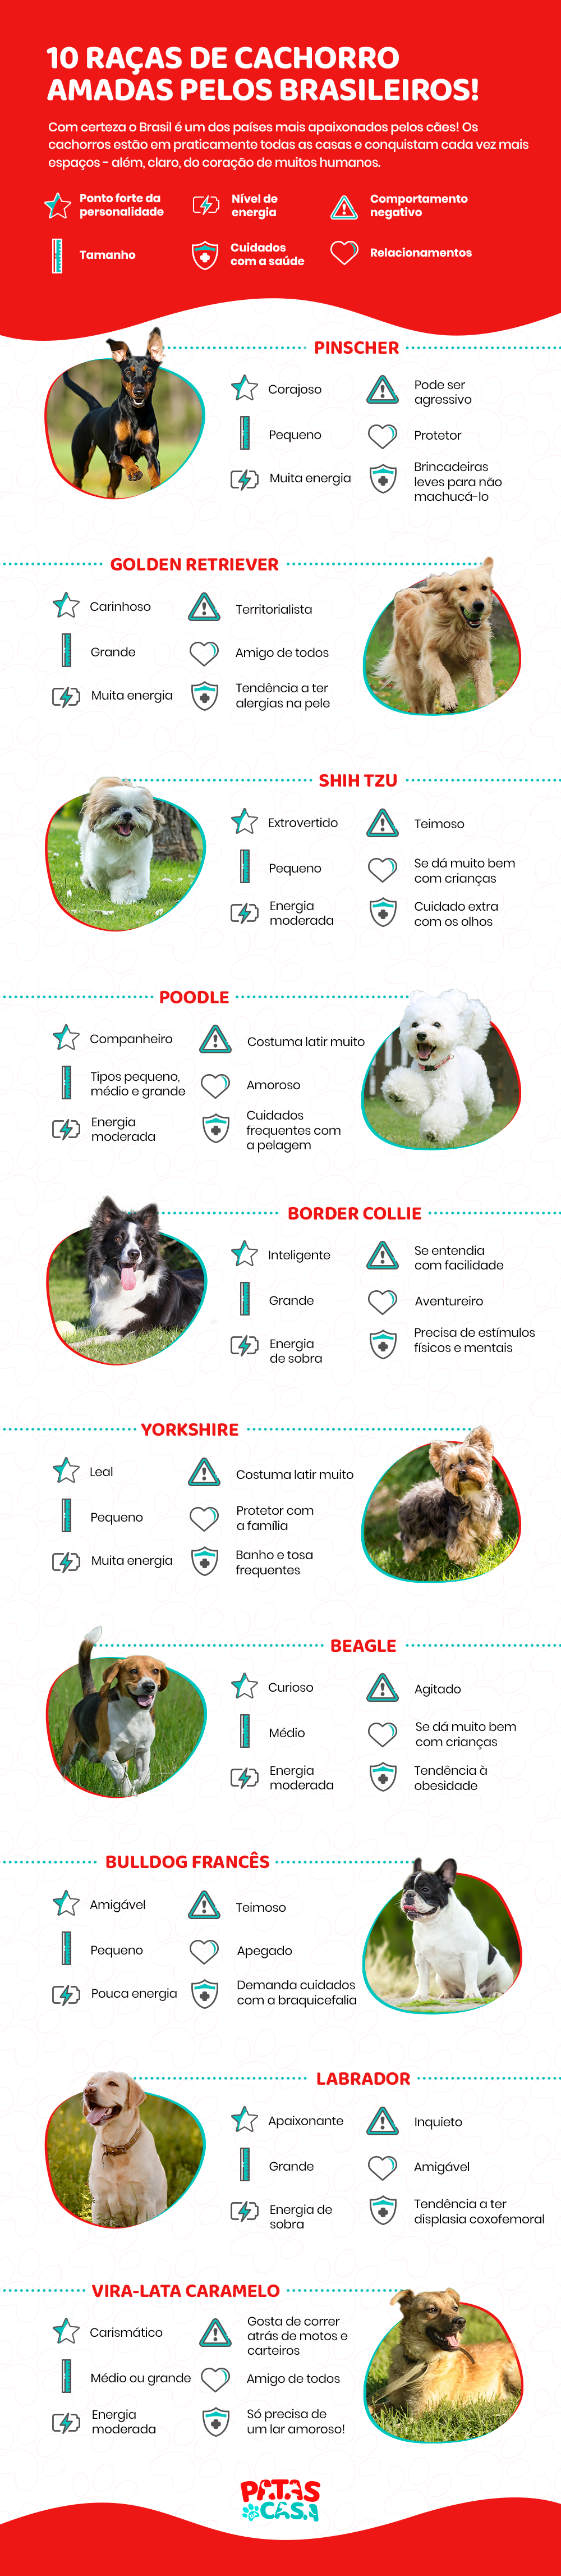 infográfico com as raças de cachorro mais amadas